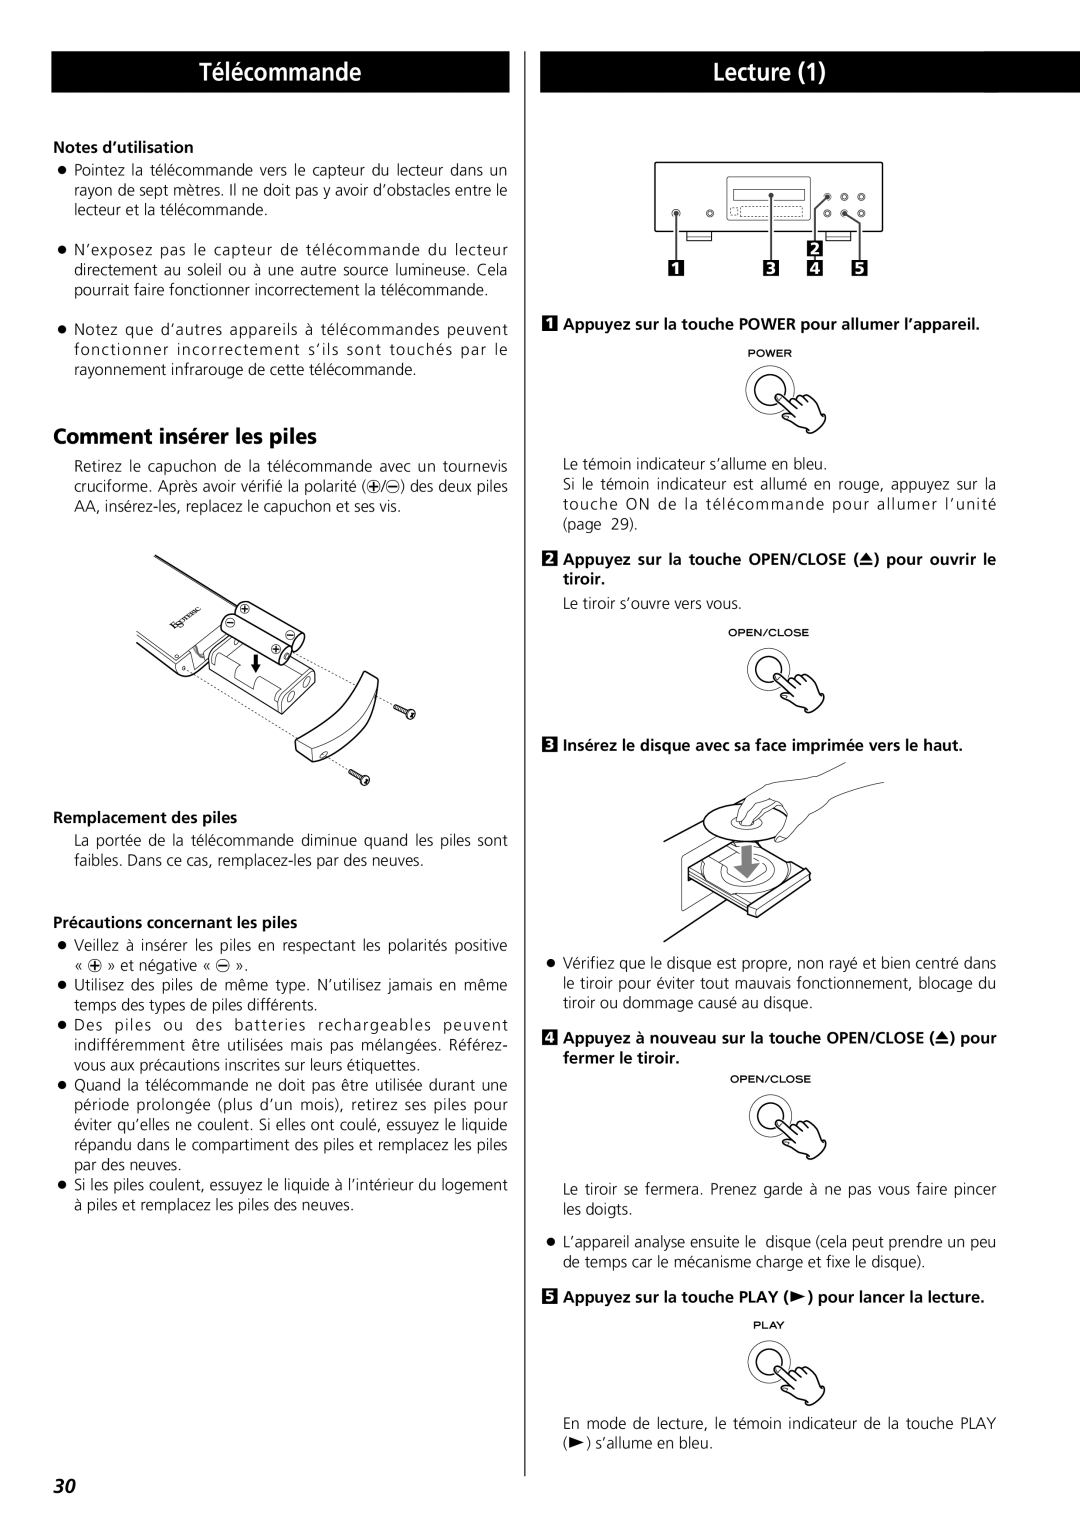 Esoteric X-05 Télécommande, Lecture, Comment insérer les piles, Notes d’utilisation, Remplacement des piles, 2 1 